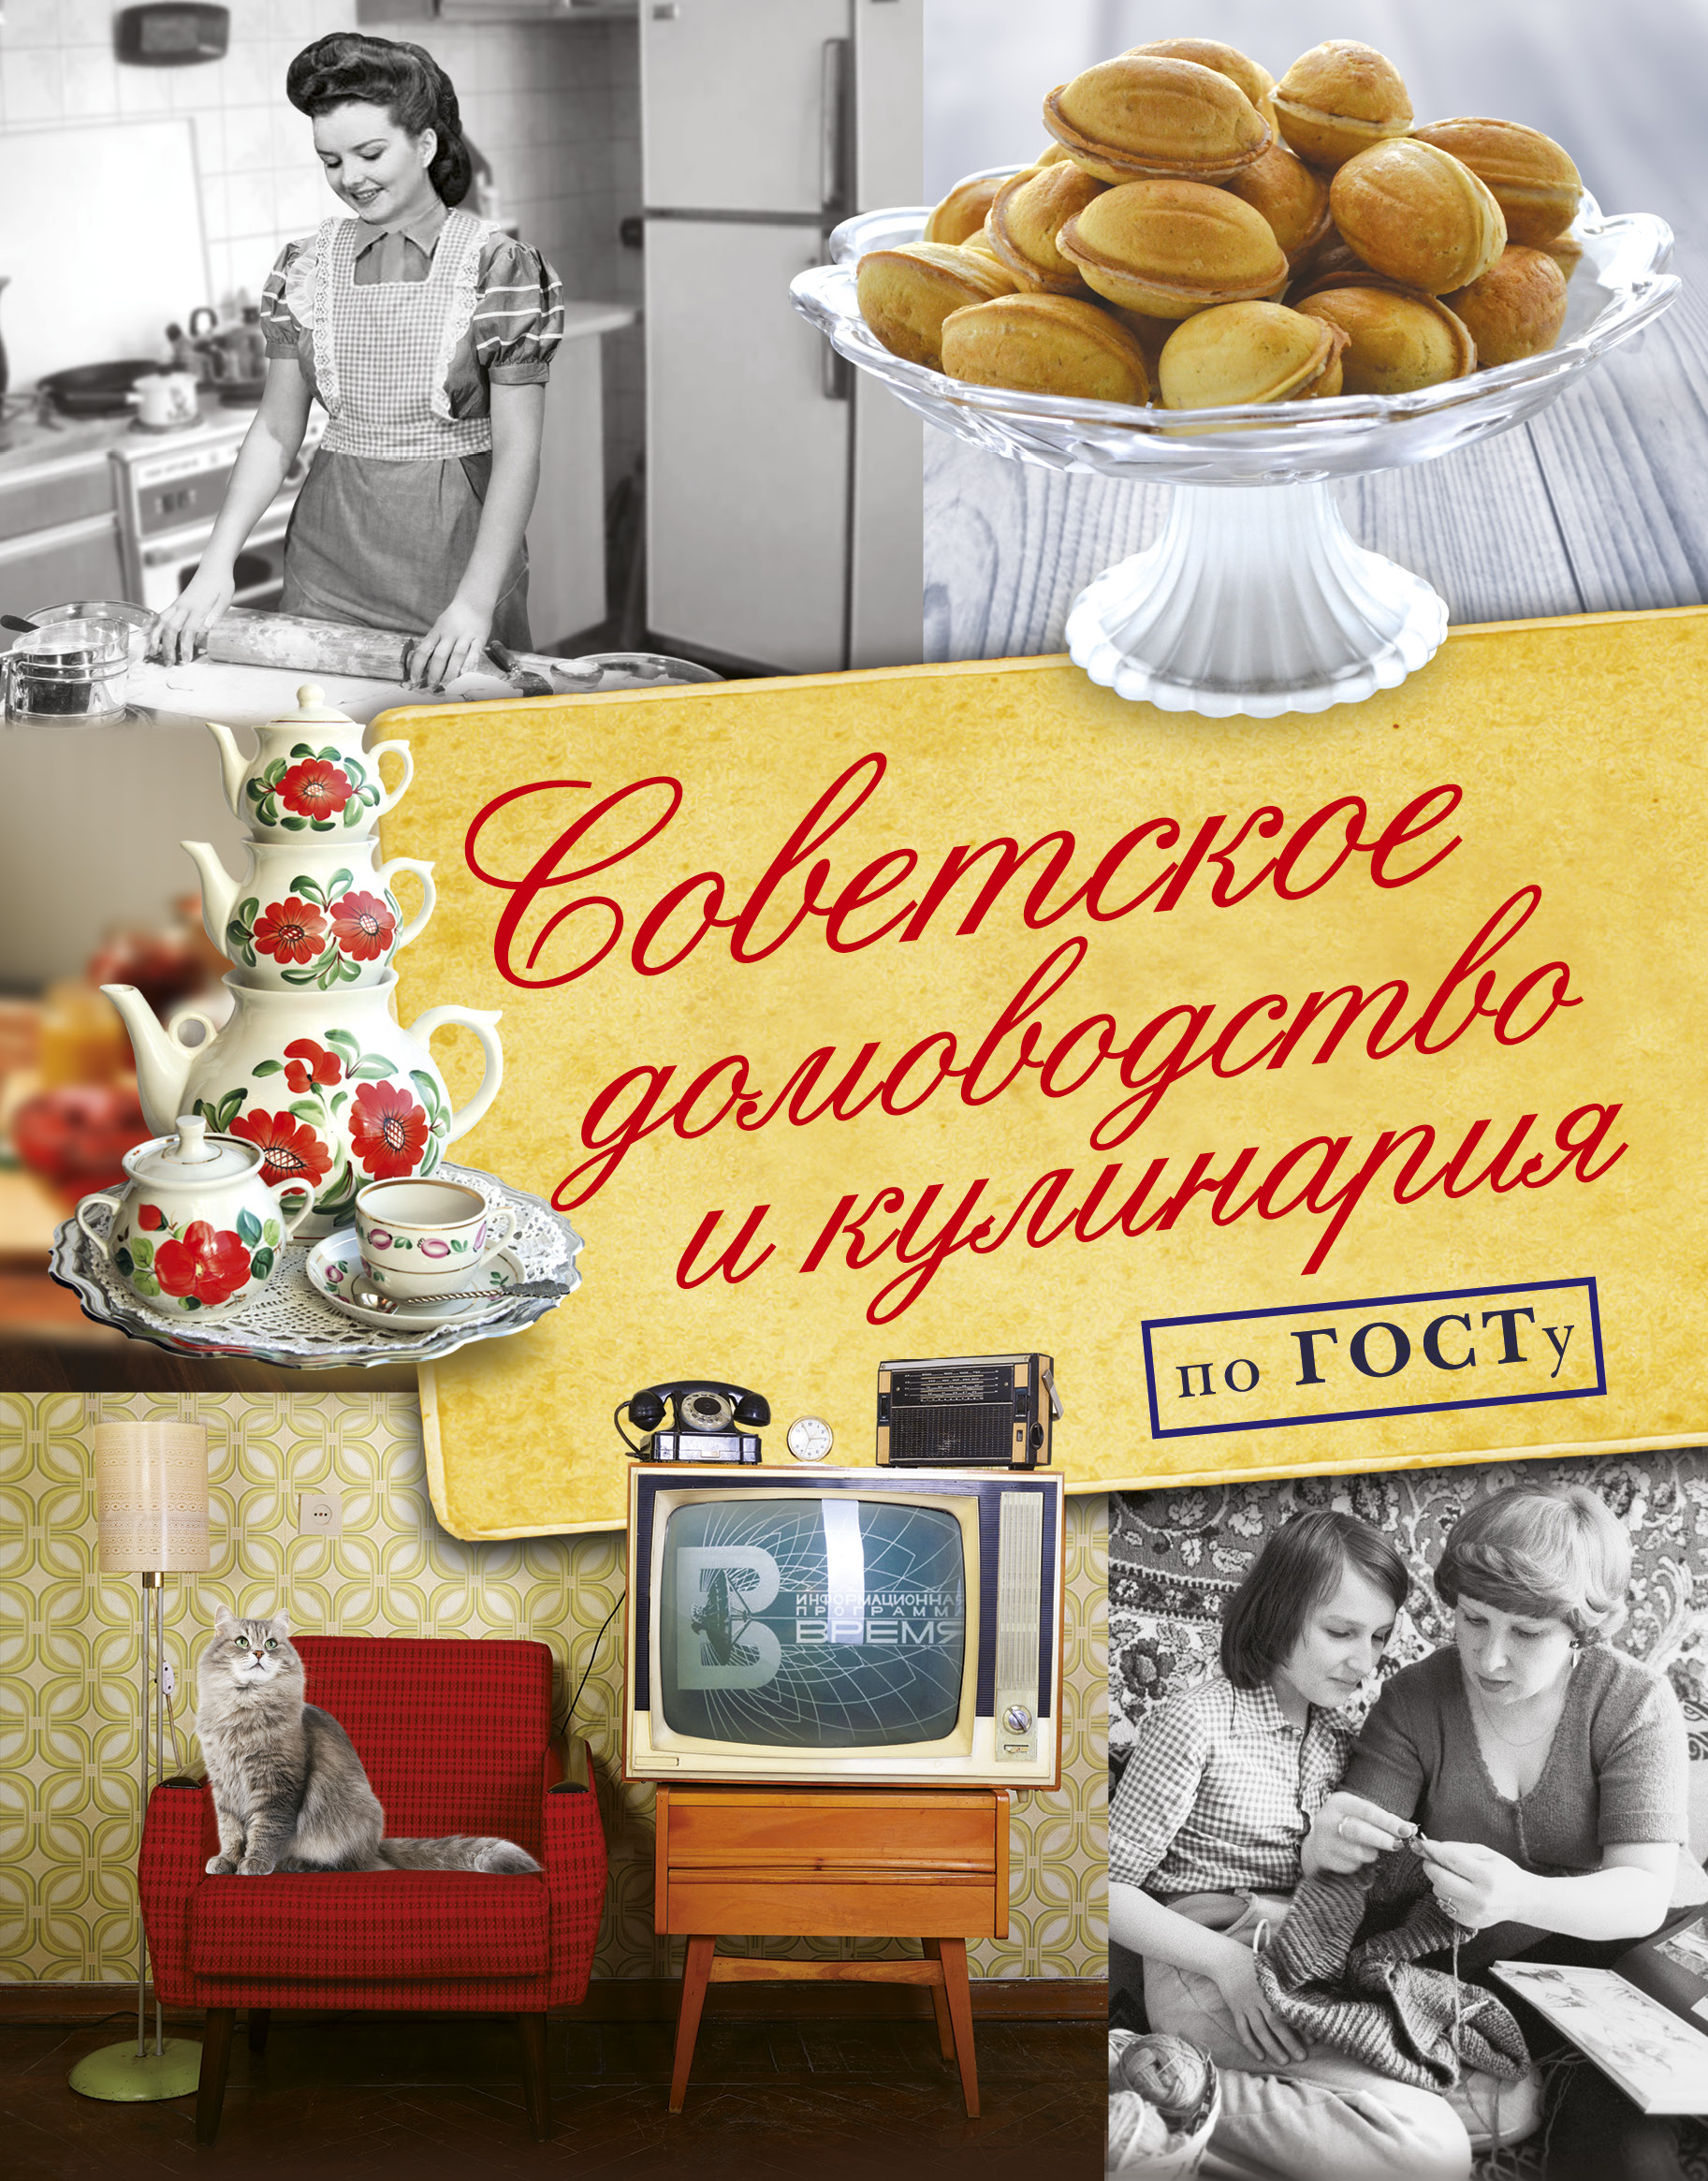 Полетаева Н. В. Советское домоводство и кулинария по ГОСТу - страница 0